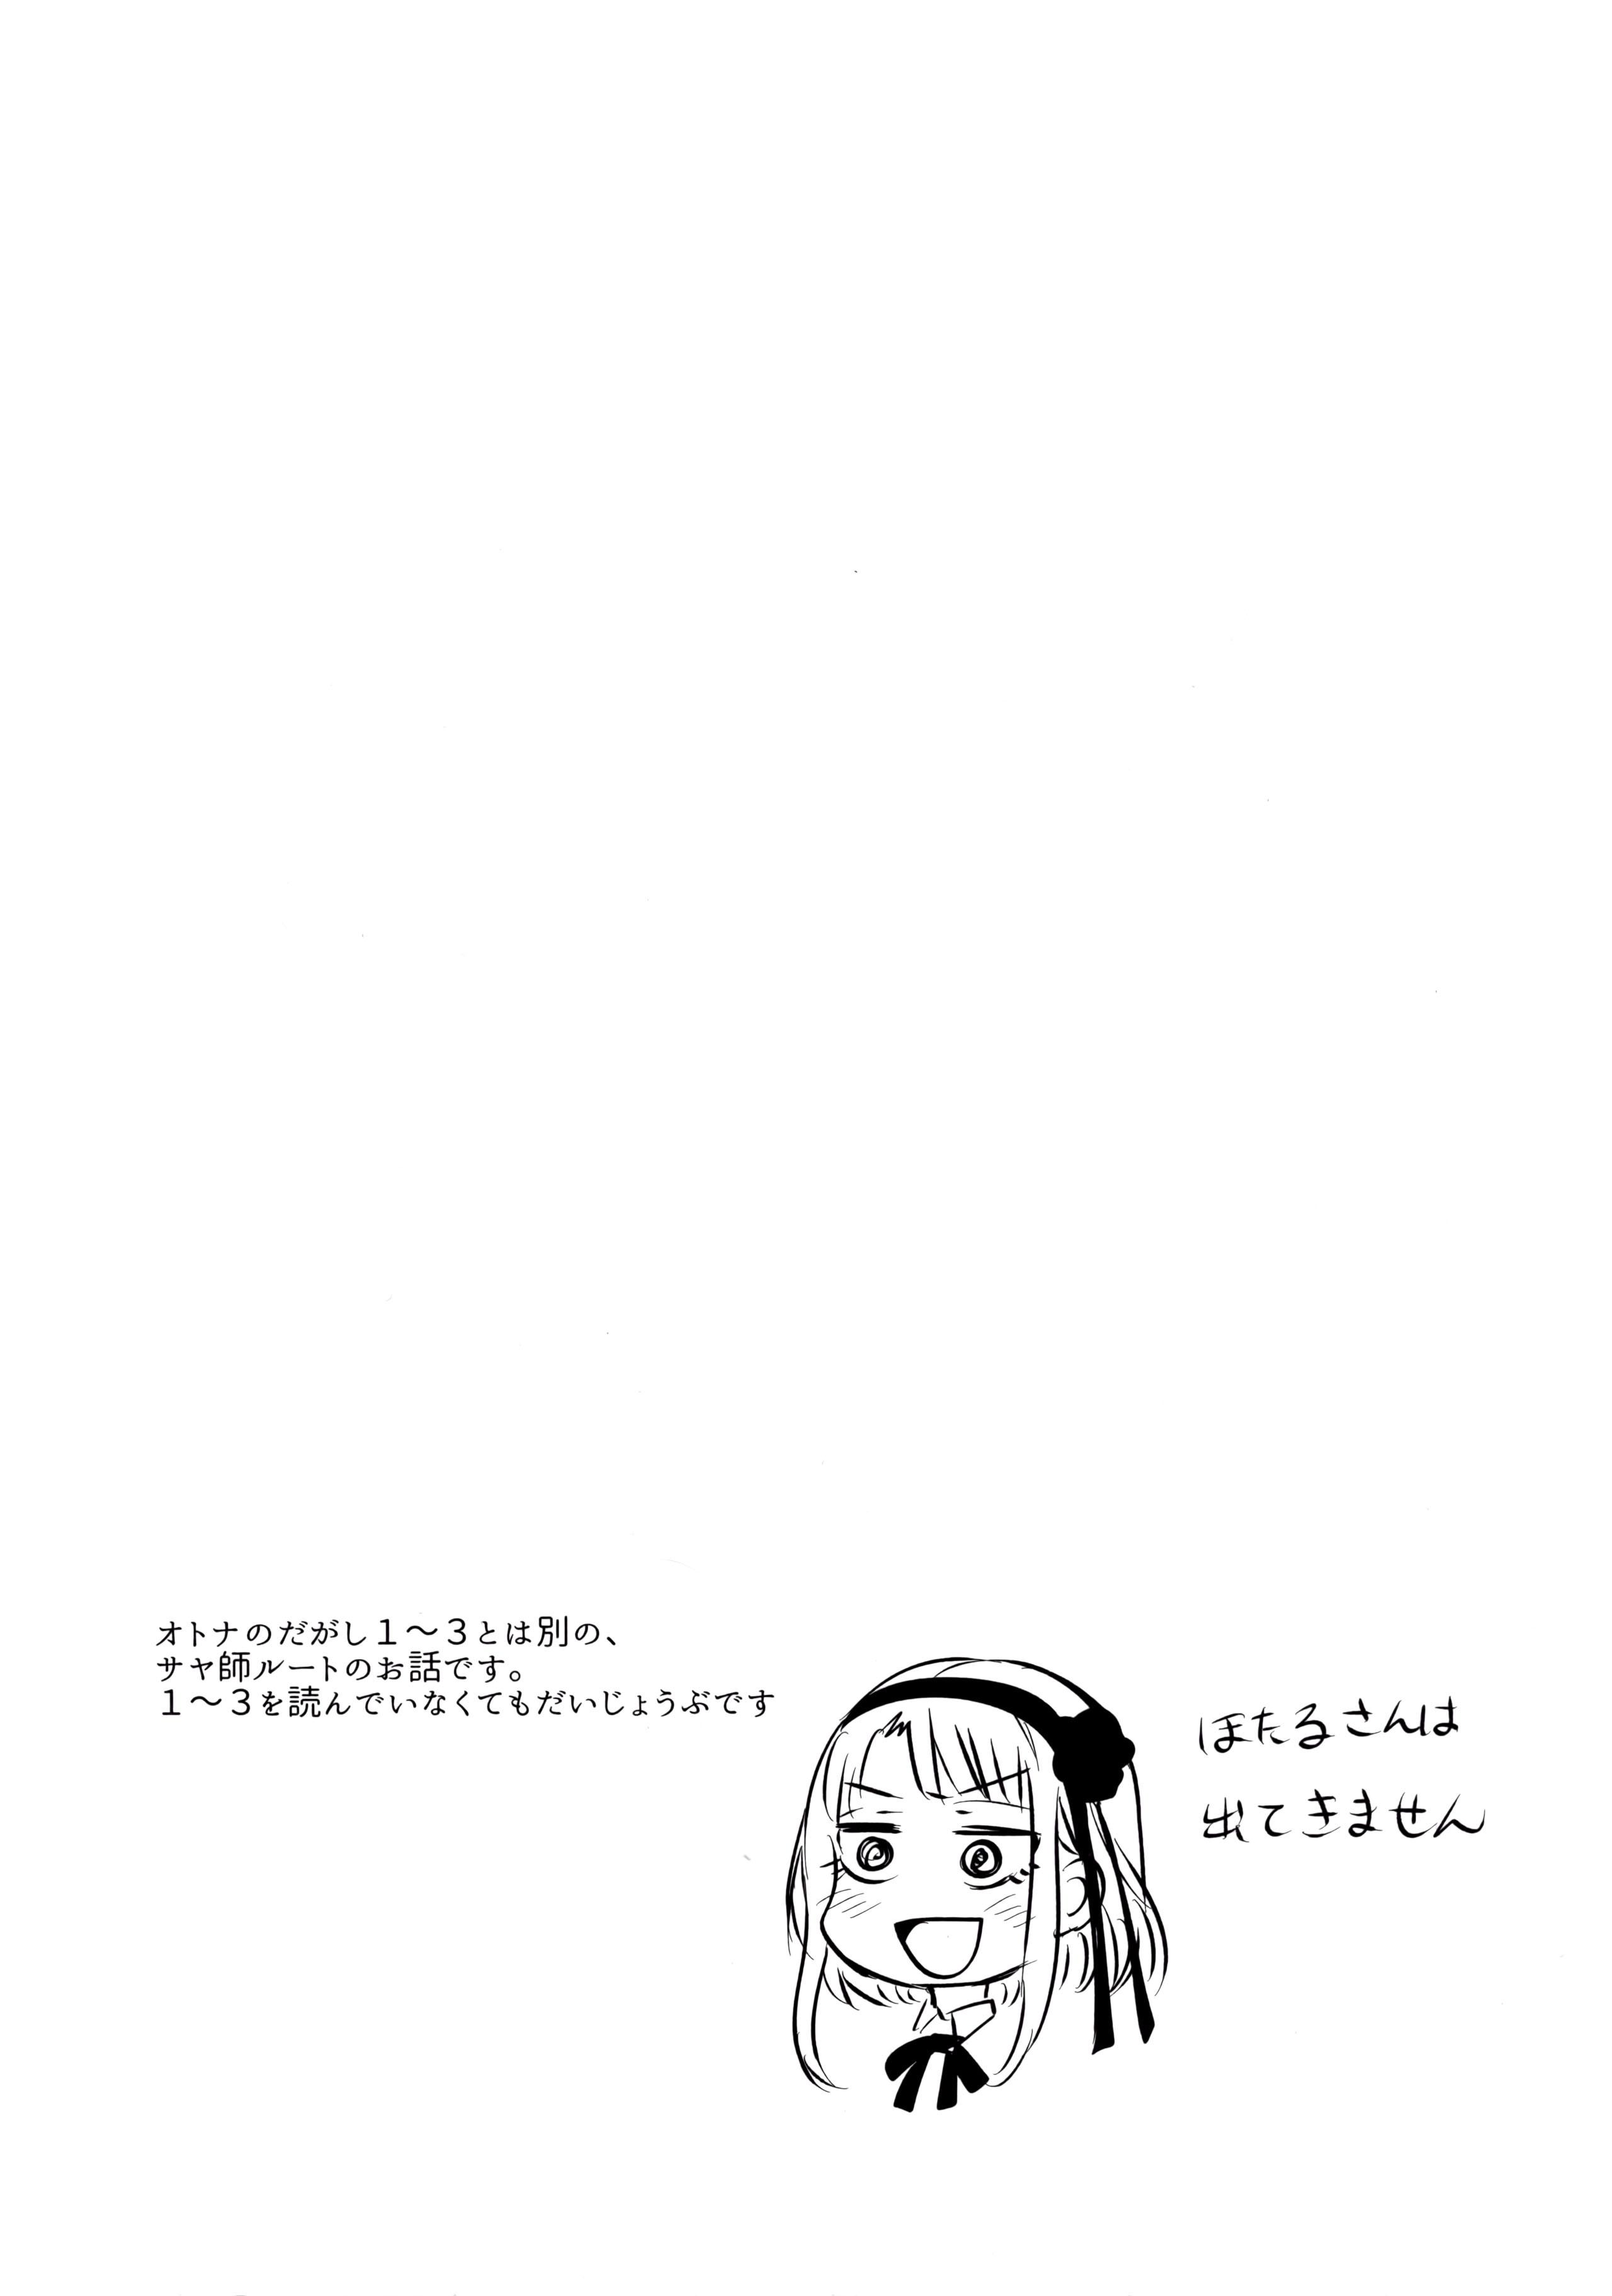 Thief Otona no Dagashi 4 - Dagashi kashi Emo Gay - Page 3